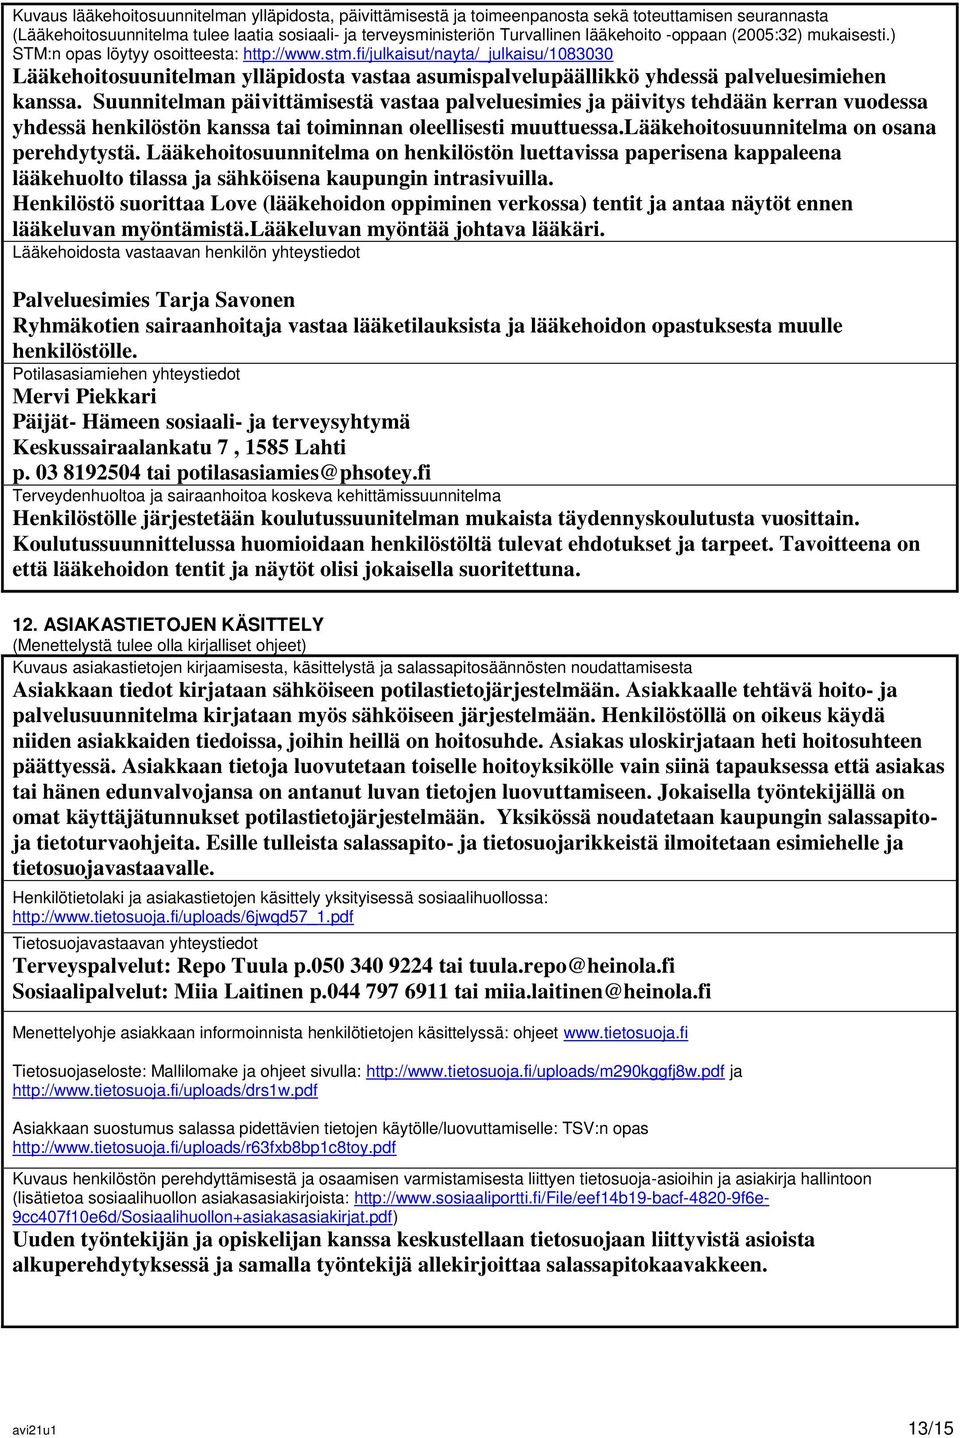 fi/julkaisut/nayta/_julkaisu/1083030 Lääkehoitosuunitelman ylläpidosta vastaa asumispalvelupäällikkö yhdessä palveluesimiehen kanssa.